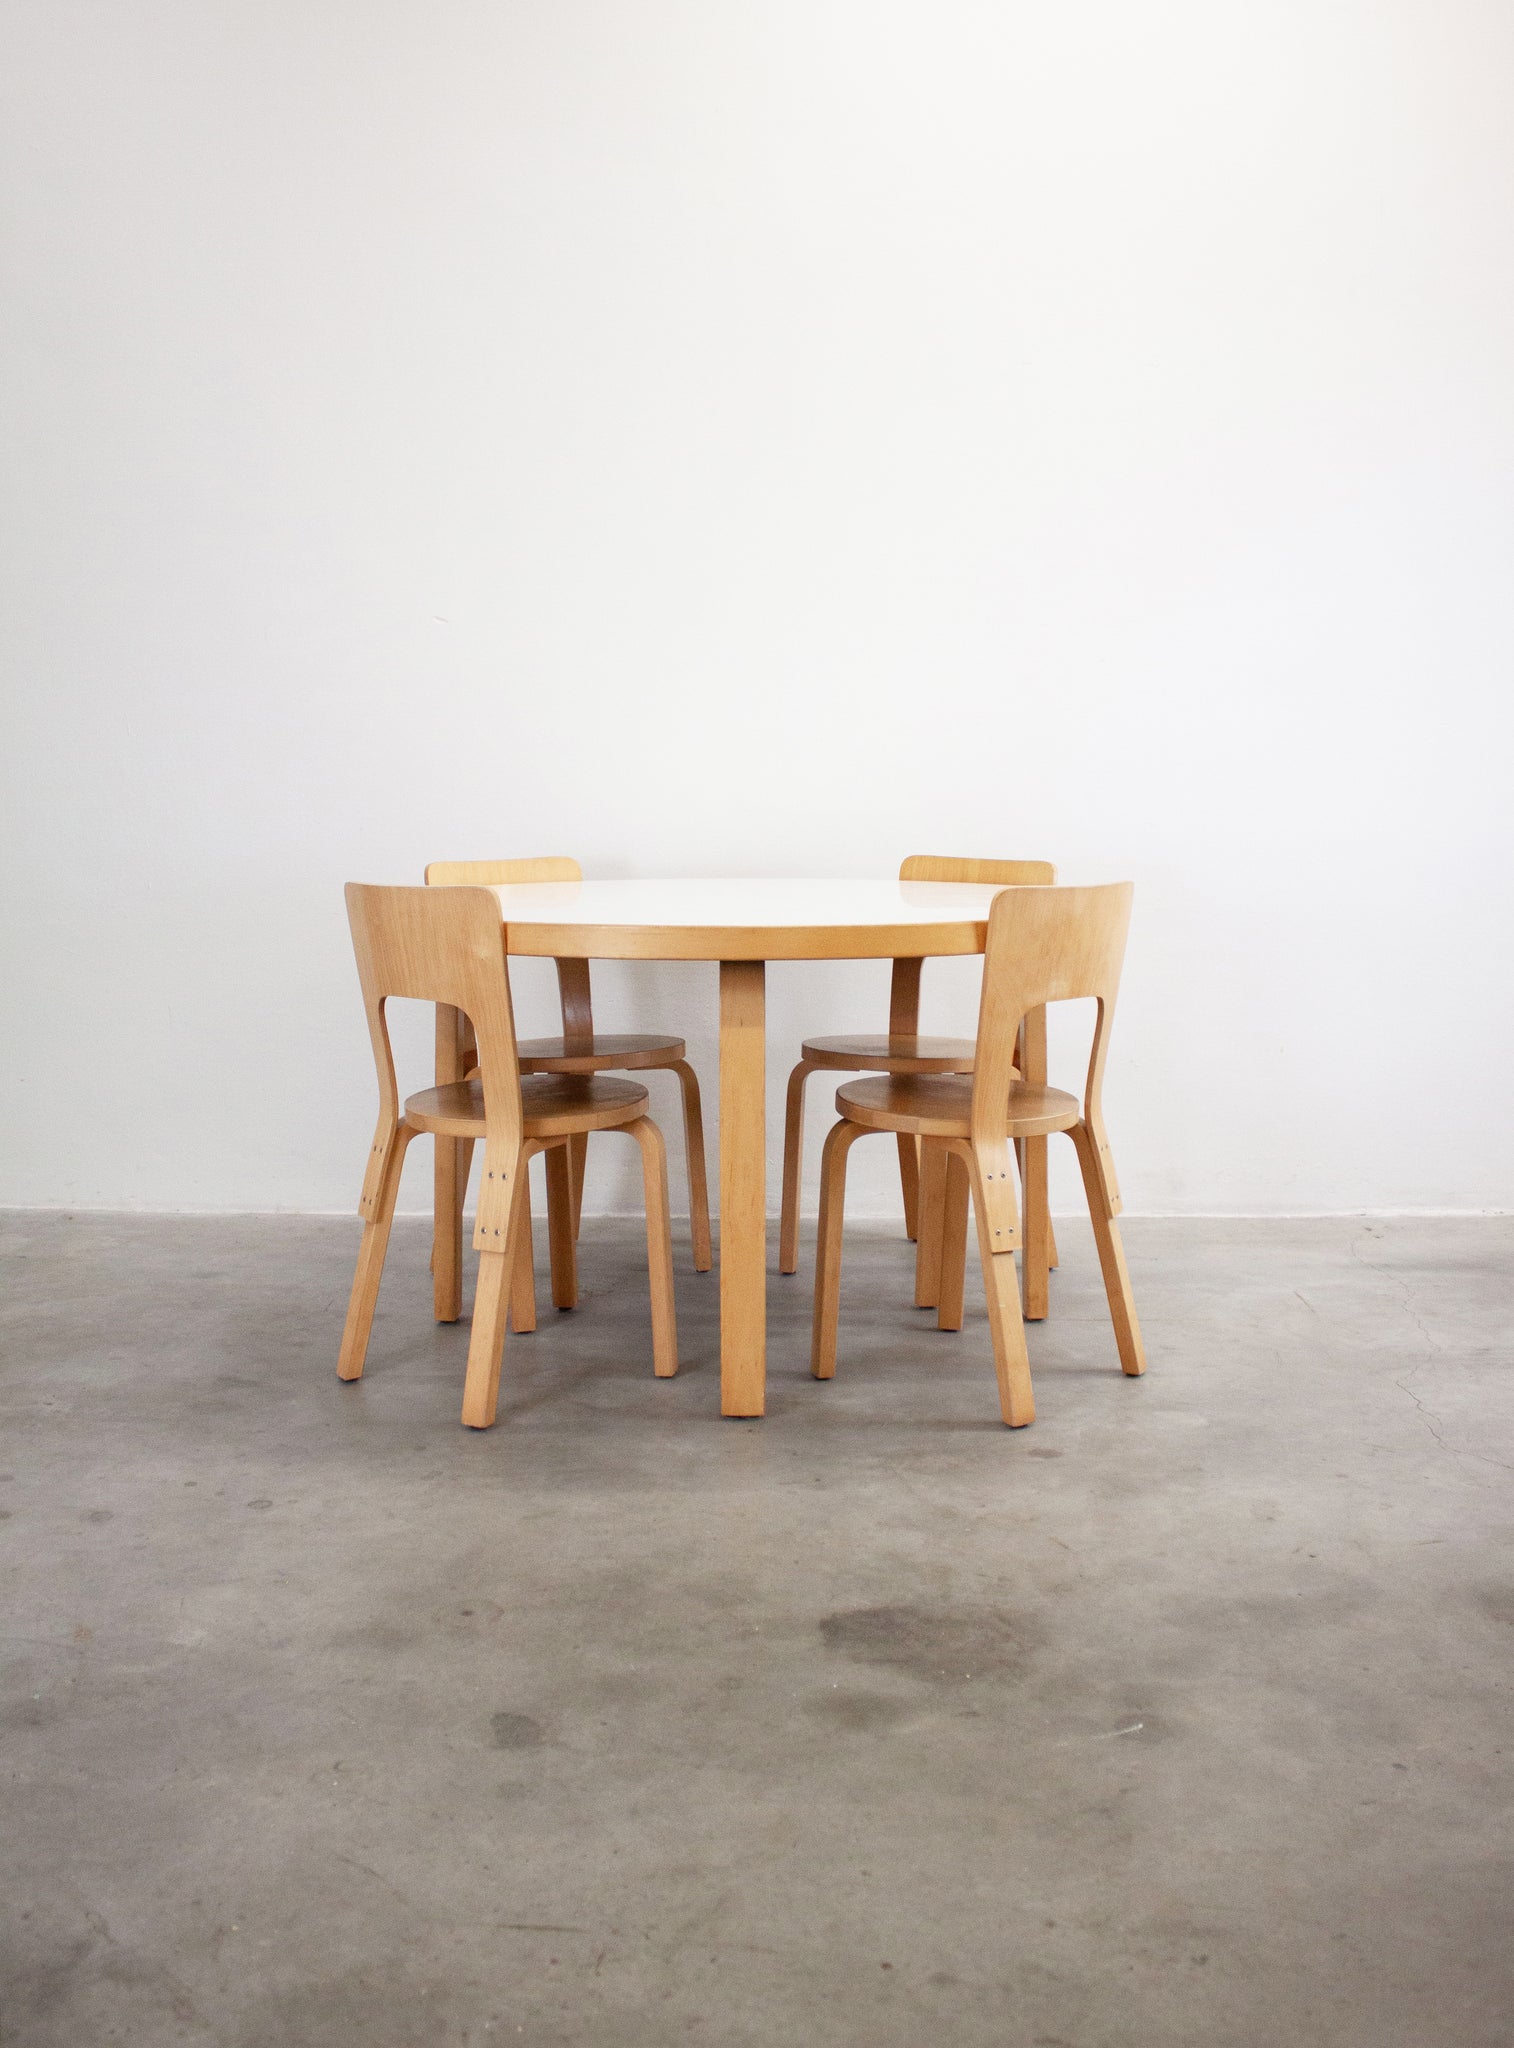 Artek Model 91 Dining Table by Alvar Aalto (White)